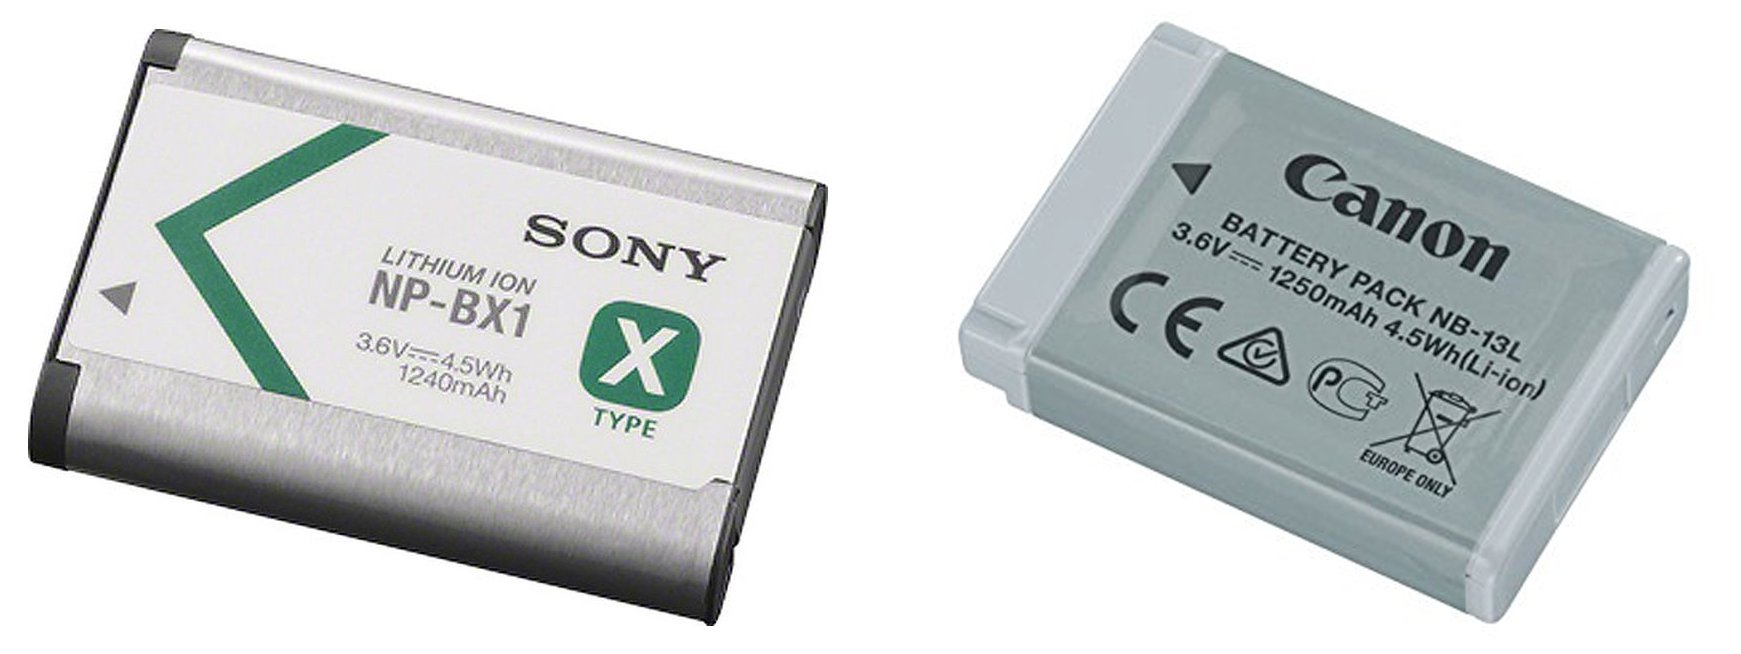 Đang tải Sony RX100 V pin battery .jpg…